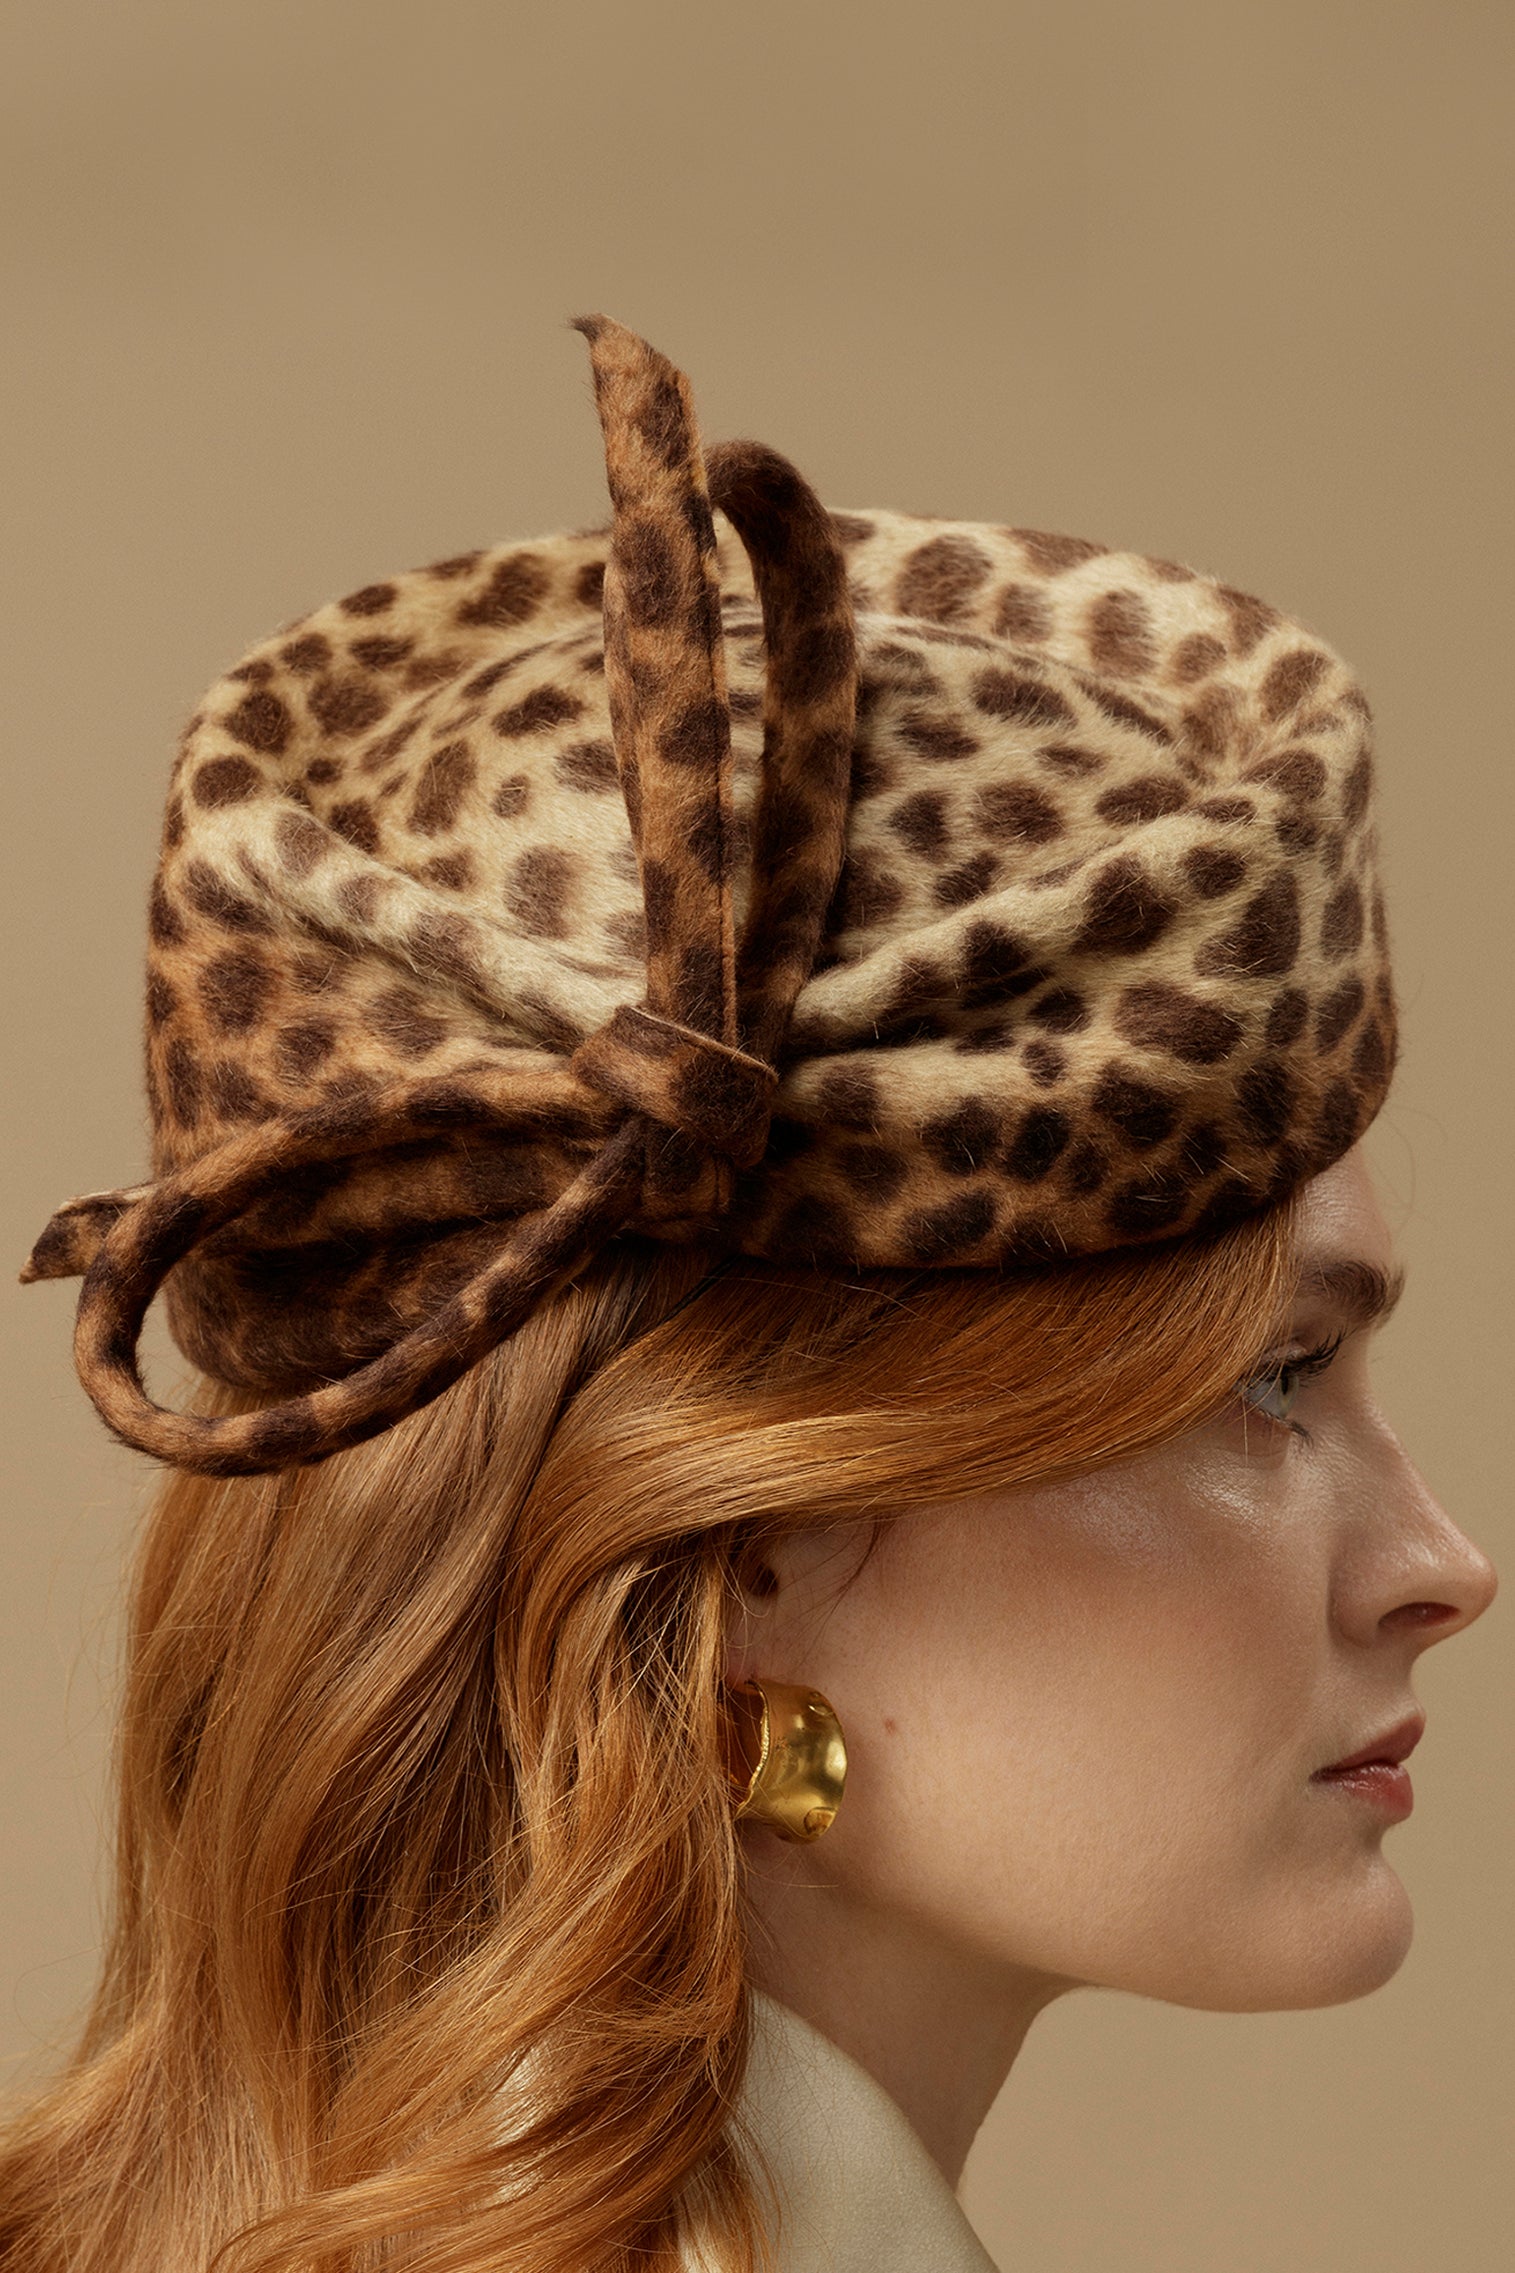 Leopard Mayfair Pillbox Hat - Pillbox Hats for Women - Lock & Co. Hatters London UK